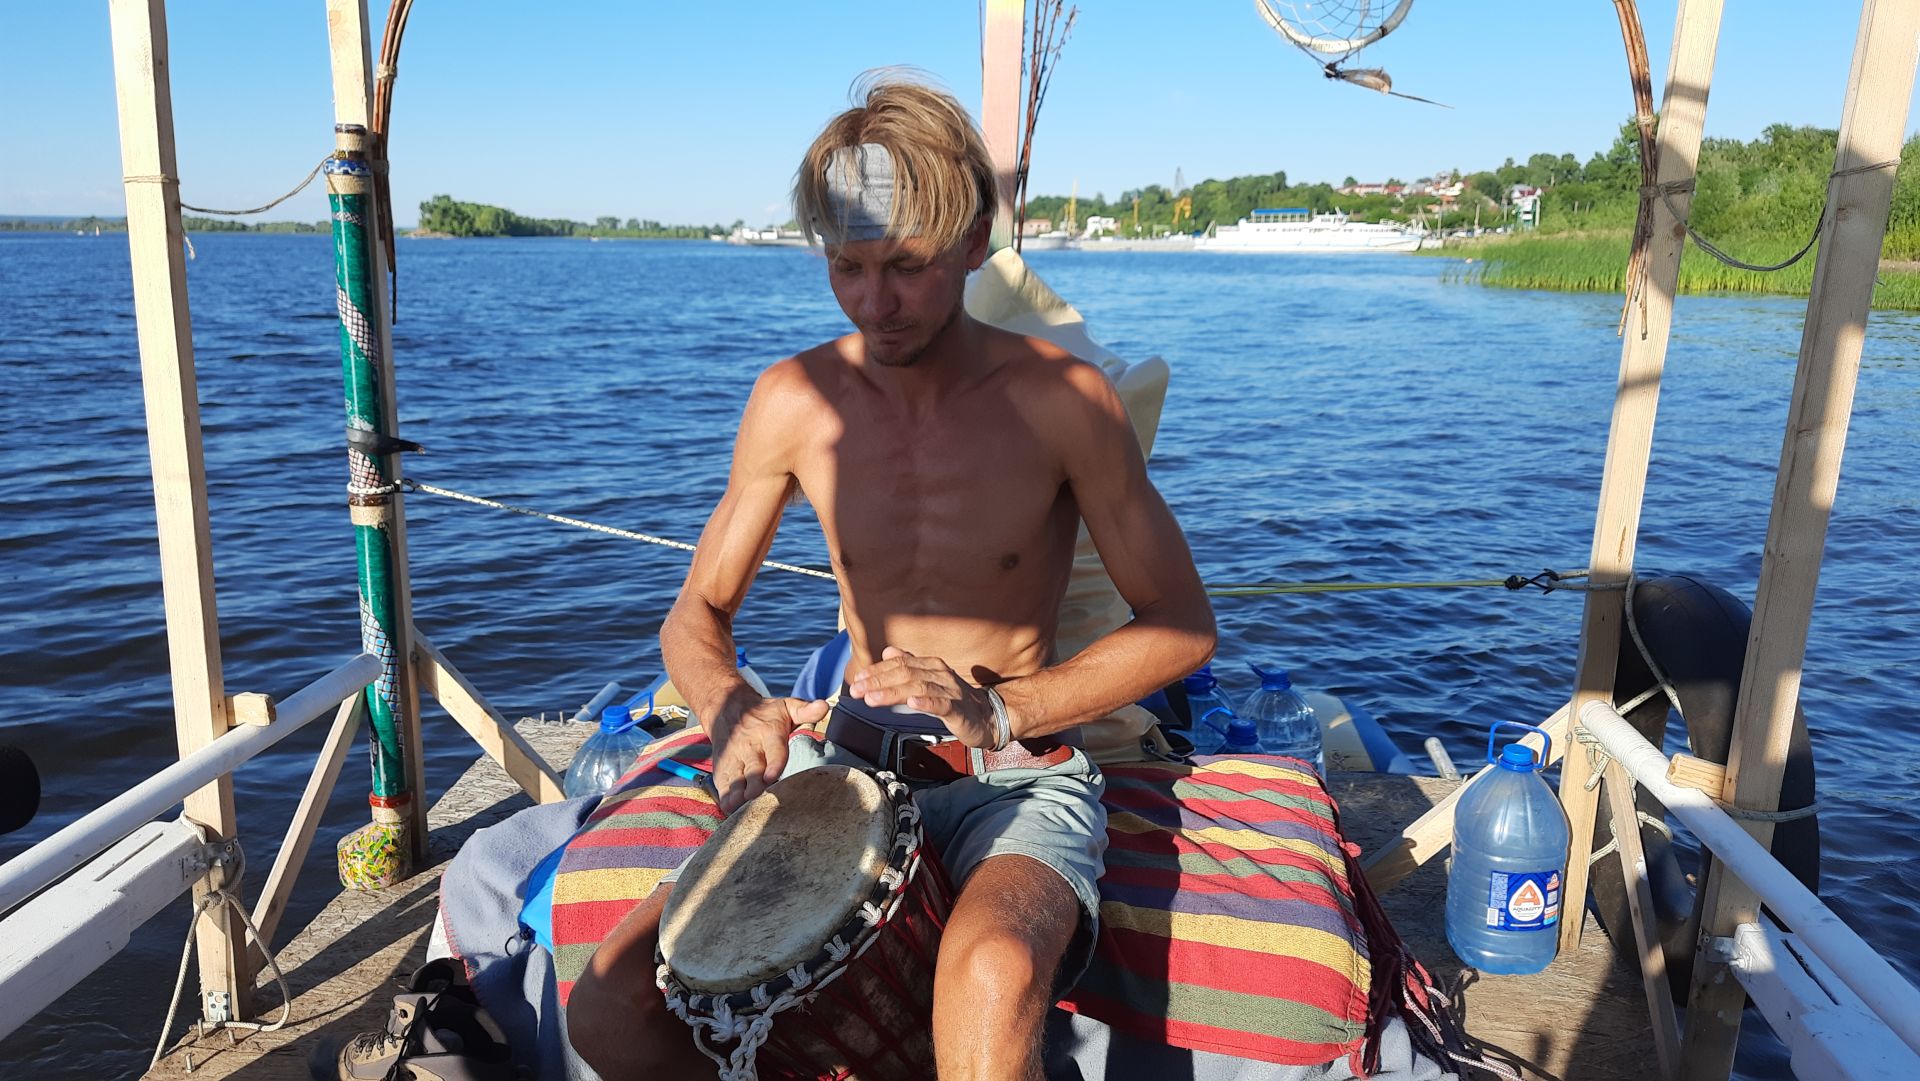 Данил Сухоруков рассказал, почему решил в одиночку отправиться в дальнее плавание на самодельном плоту